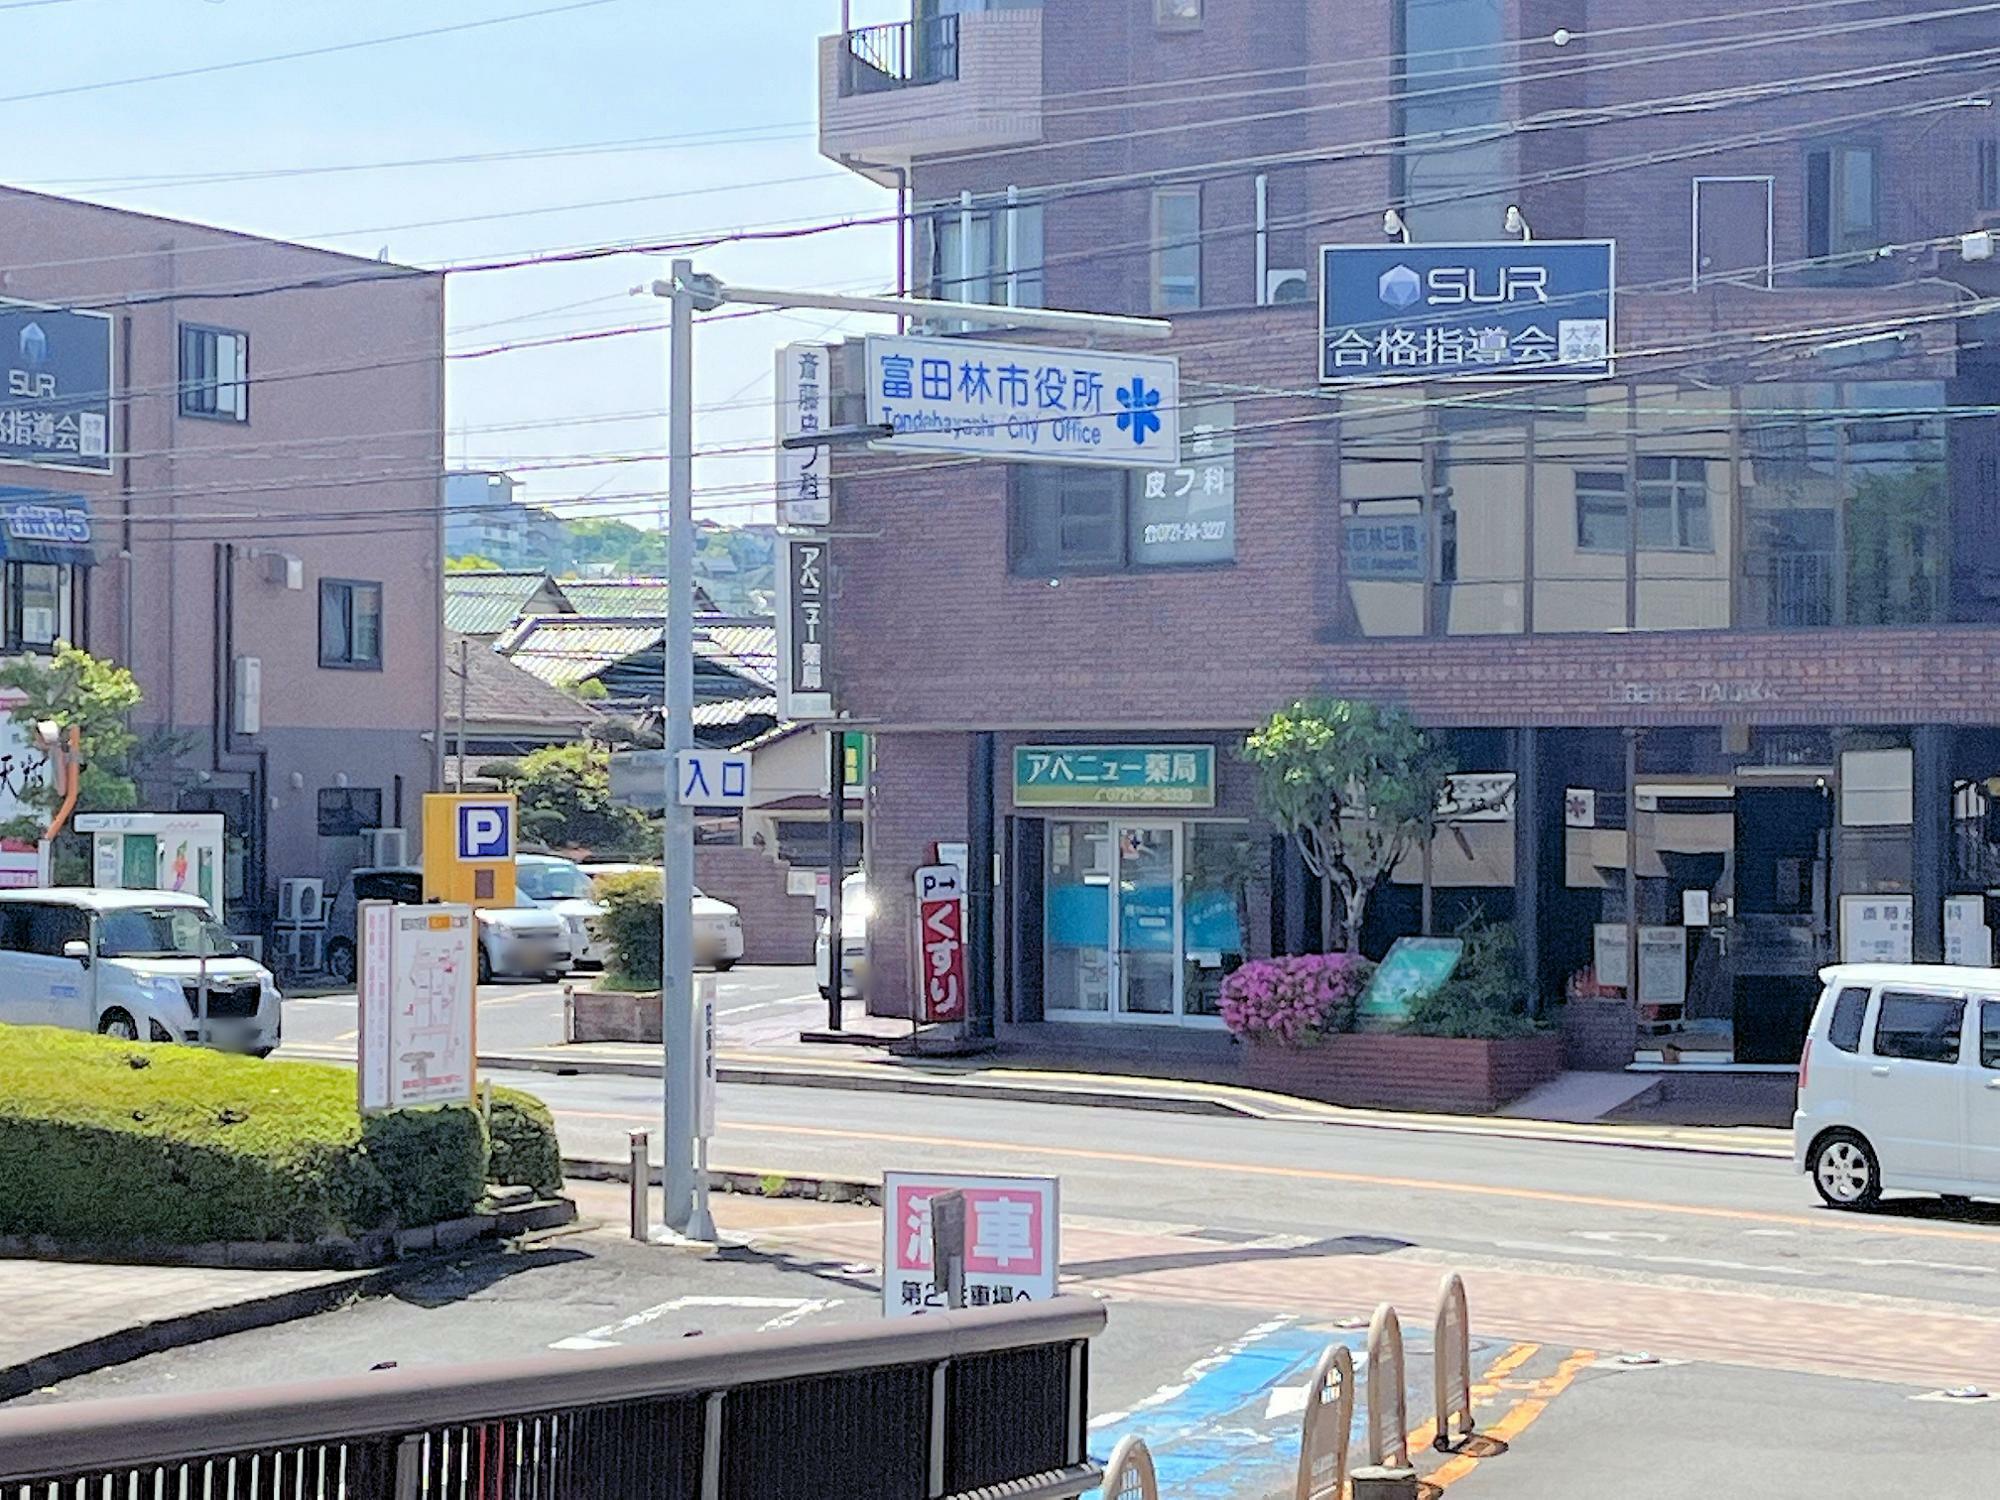 富田林警察署は画像の建物から見て、左側、富田林市役所の隣にあります